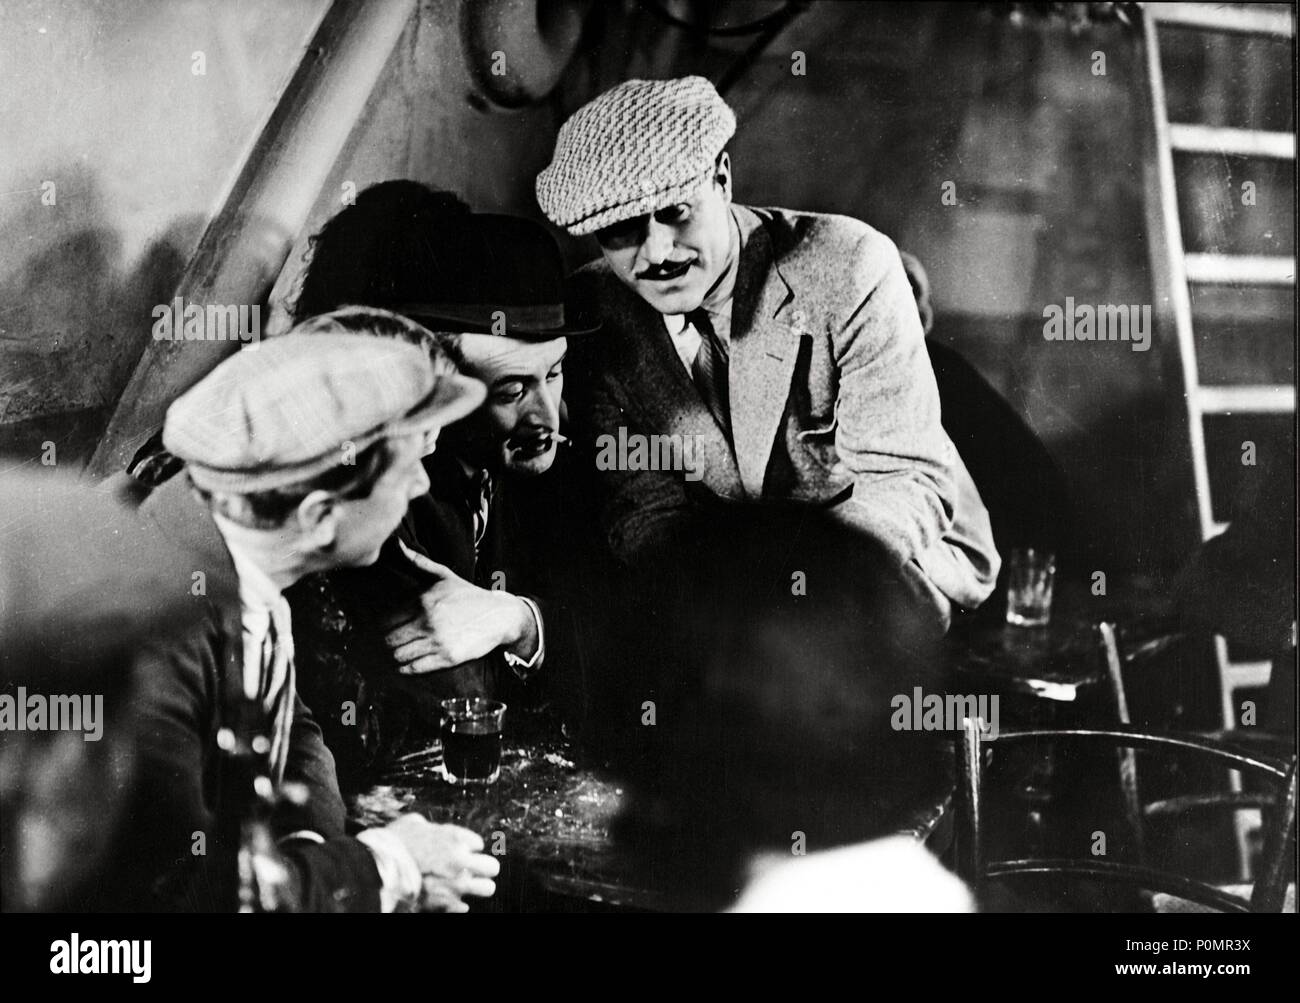 Original Film Title: SOUS LES TOITS DE PARIS.  English Title: UNDER THE ROOFS OF PARIS.  Film Director: RENE CLAIR.  Year: 1930.  Stars: GASTON MODOT. Stock Photo